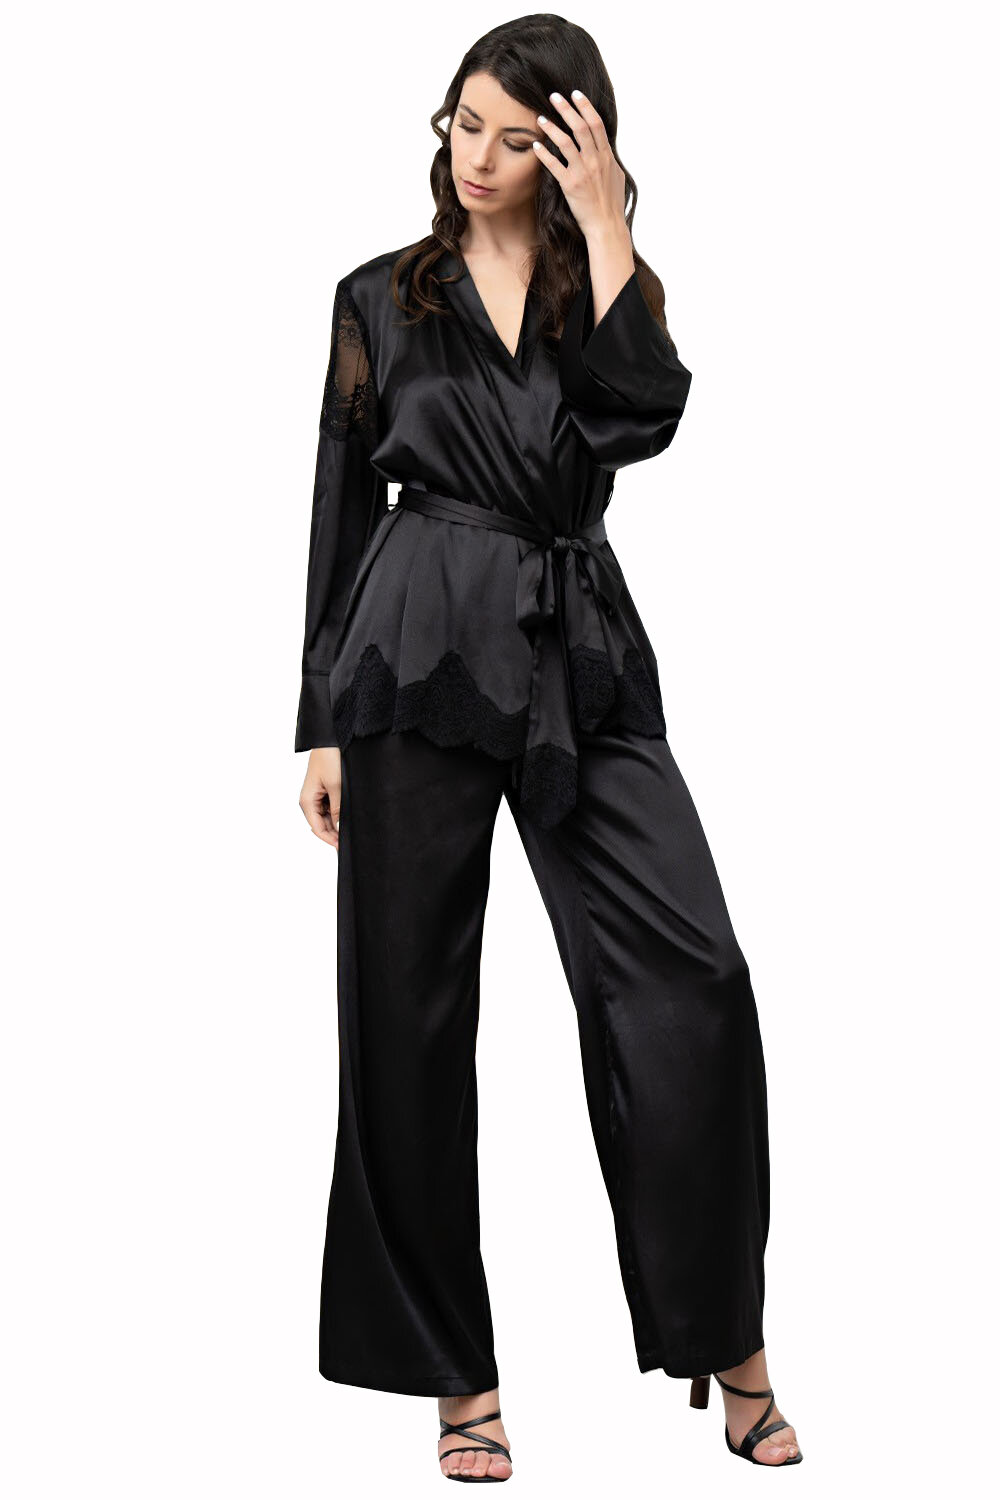 Комплект MIA-AMORE Aurelia 3896, жакет, брюки и бралетт, шелк 70%, черный (Размер: XL) - фотография № 5